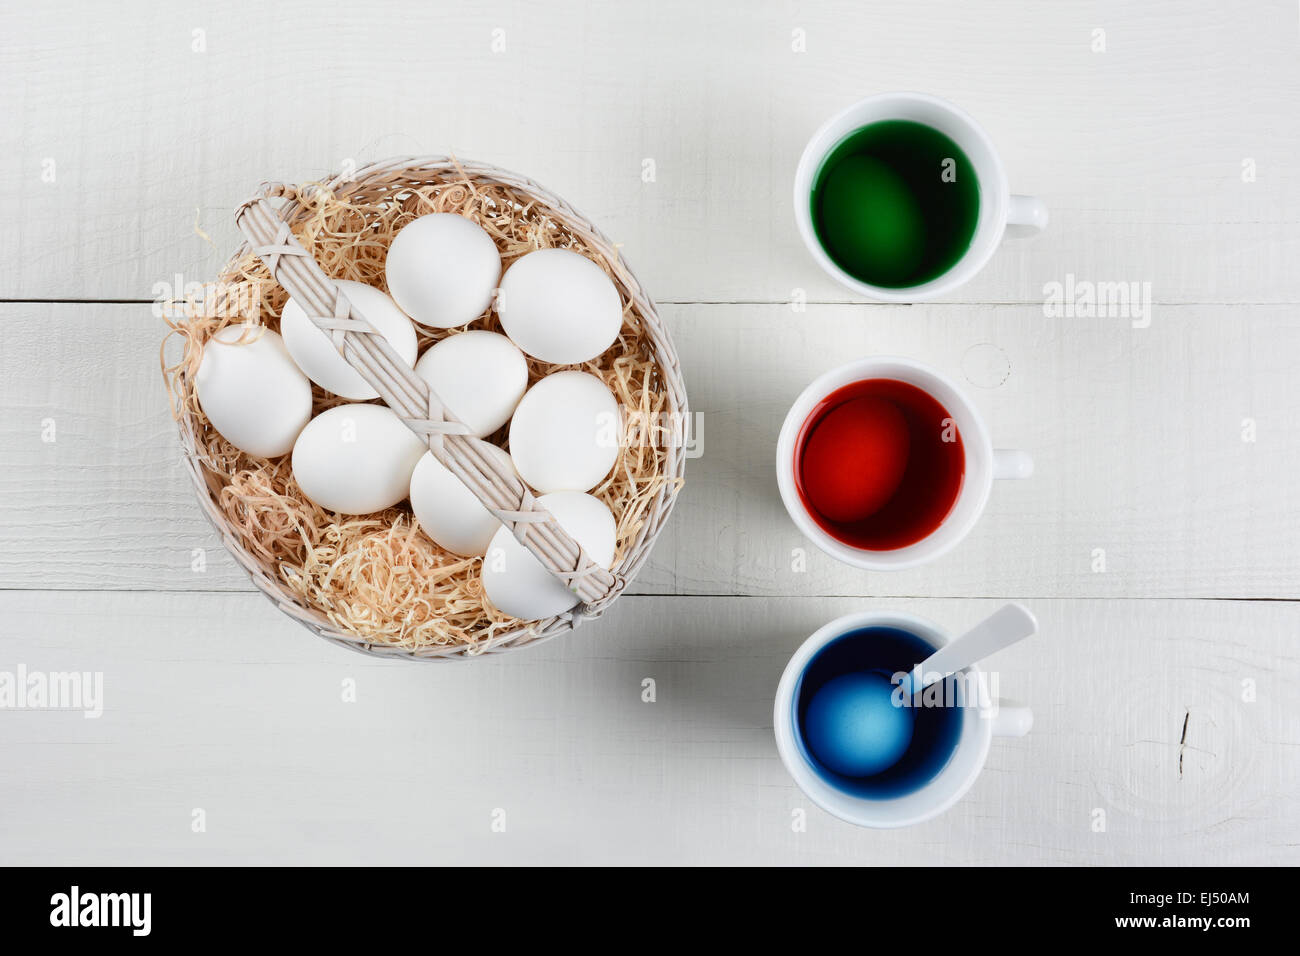 Hohen Winkel Schuss von einem Korb voller Eier zu Ostern gefärbt werden. Drei Tassen des Farbstoffes mit Eiern einweichen sind neben die Körbe von euch Stockfoto